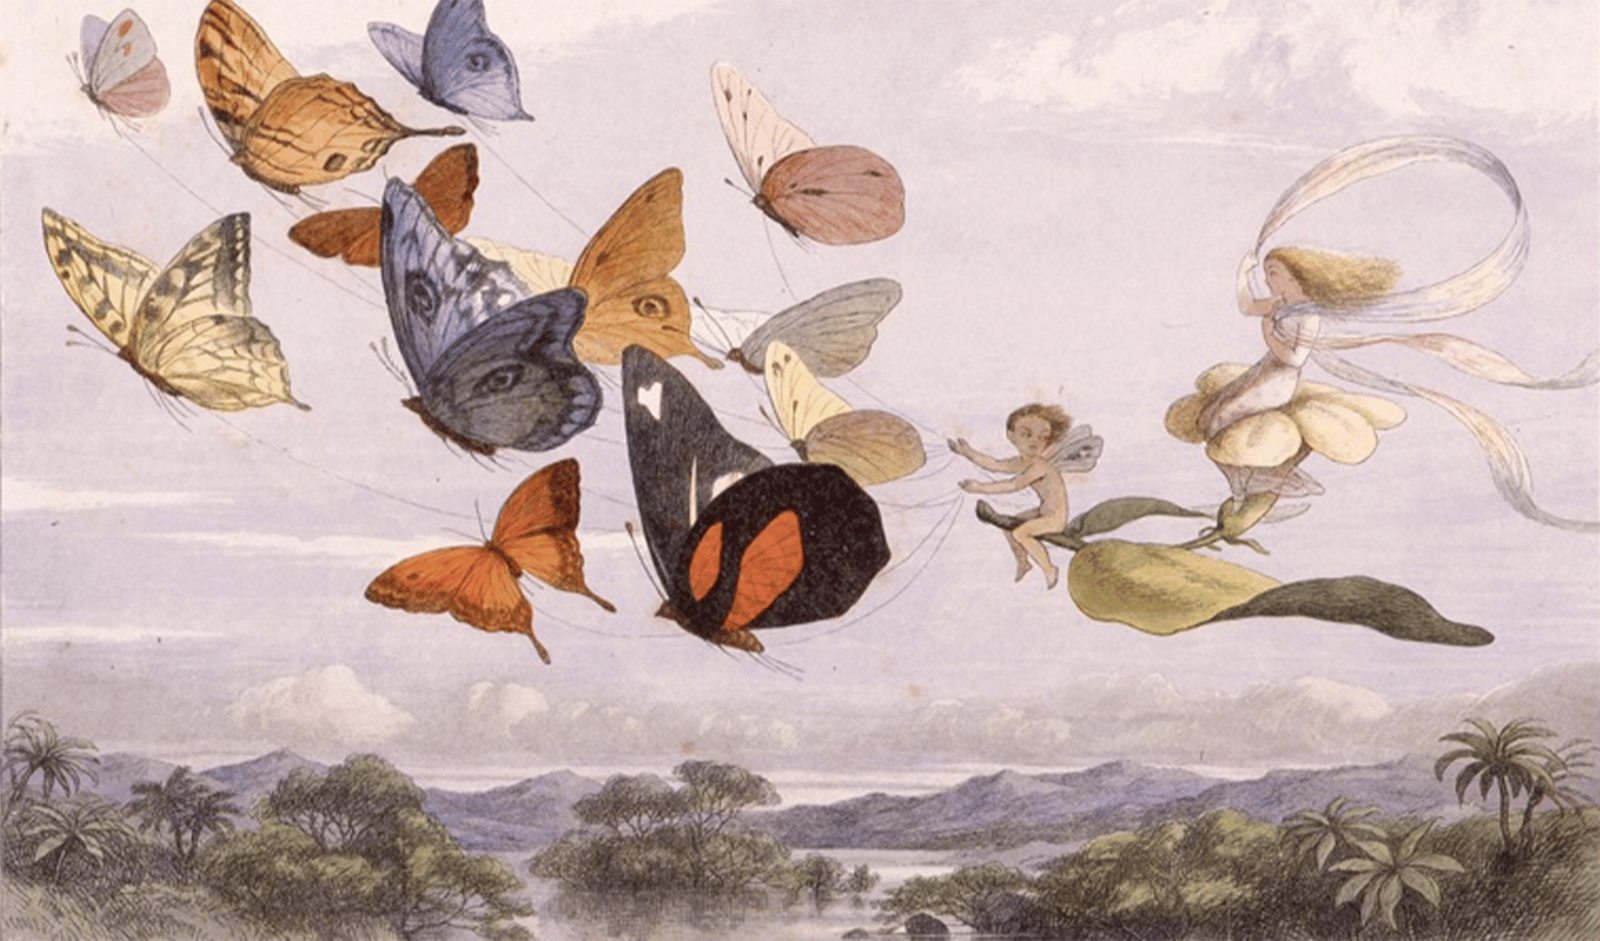 ウィリアム・アリンガム著、リチャード・ドイル画『妖精の国にて』より（1875年刊、栃木県立美術館蔵）。小口木版画による究極の緻密さと、9つの色版で、妖精の世界を見事に表現。